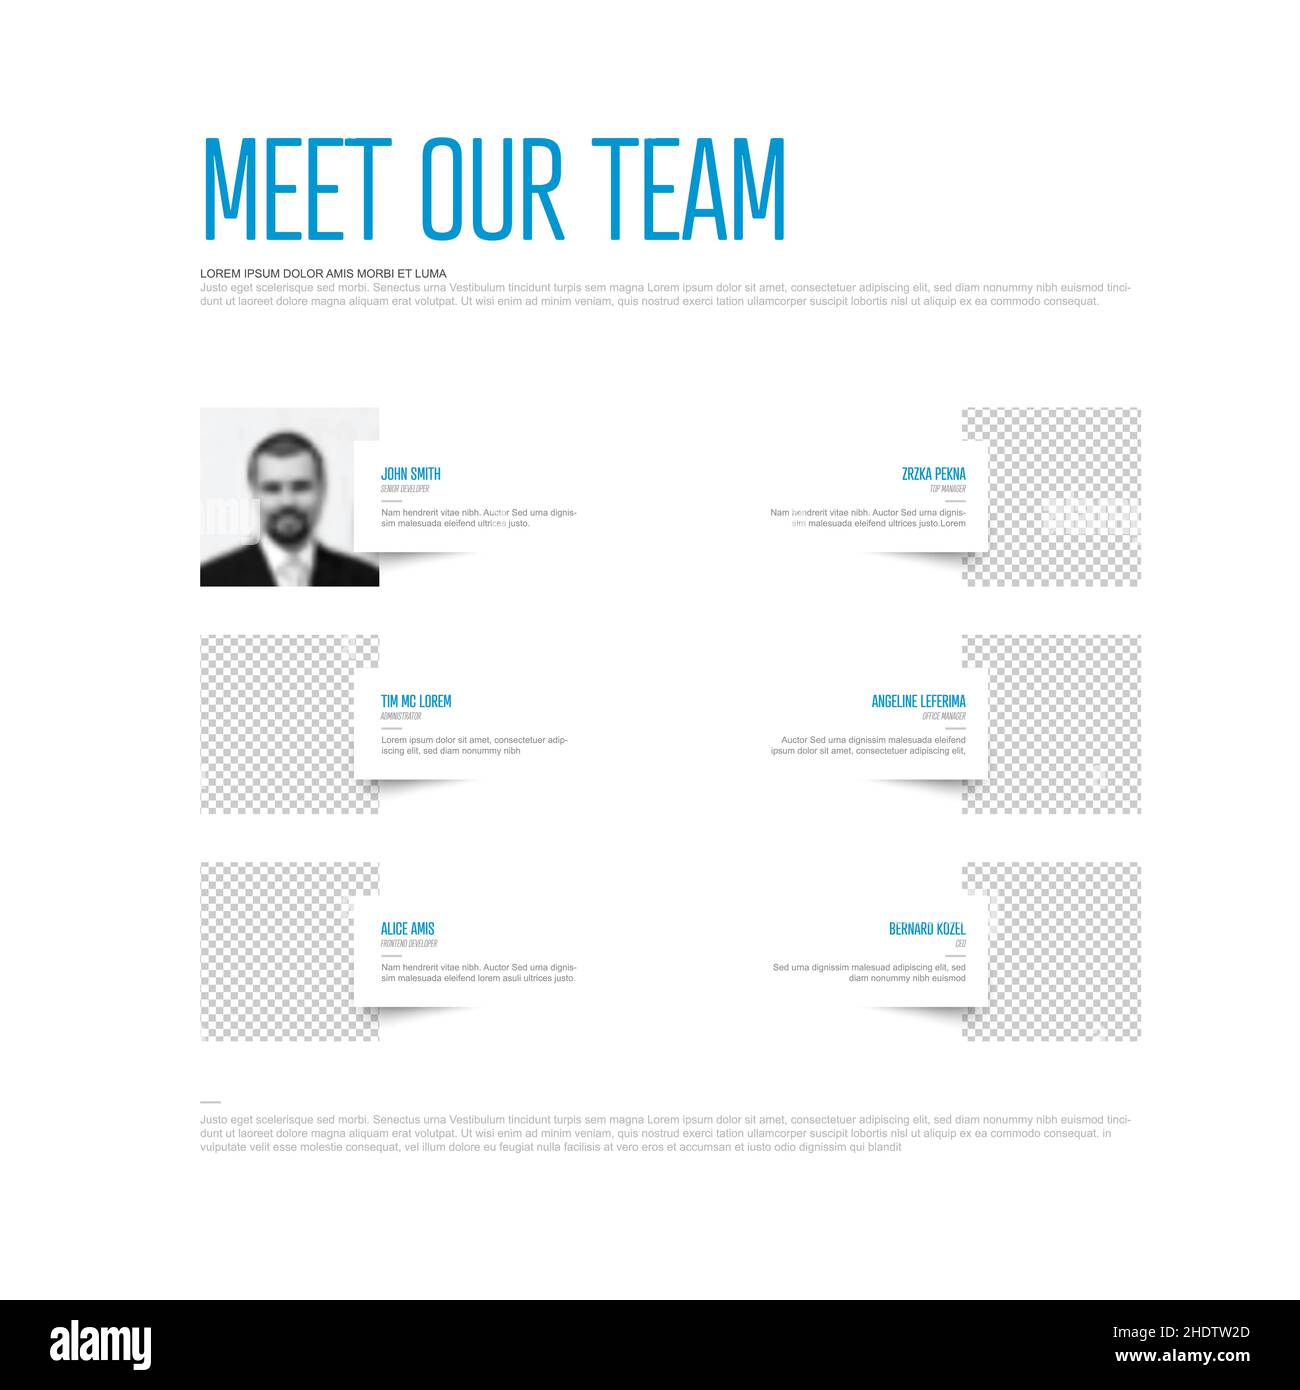 Modello di presentazione del team aziendale con segnaposto per le foto del profilo del team e testo di esempio su ciascun membro del team: Versione leggera e accento blu Illustrazione Vettoriale